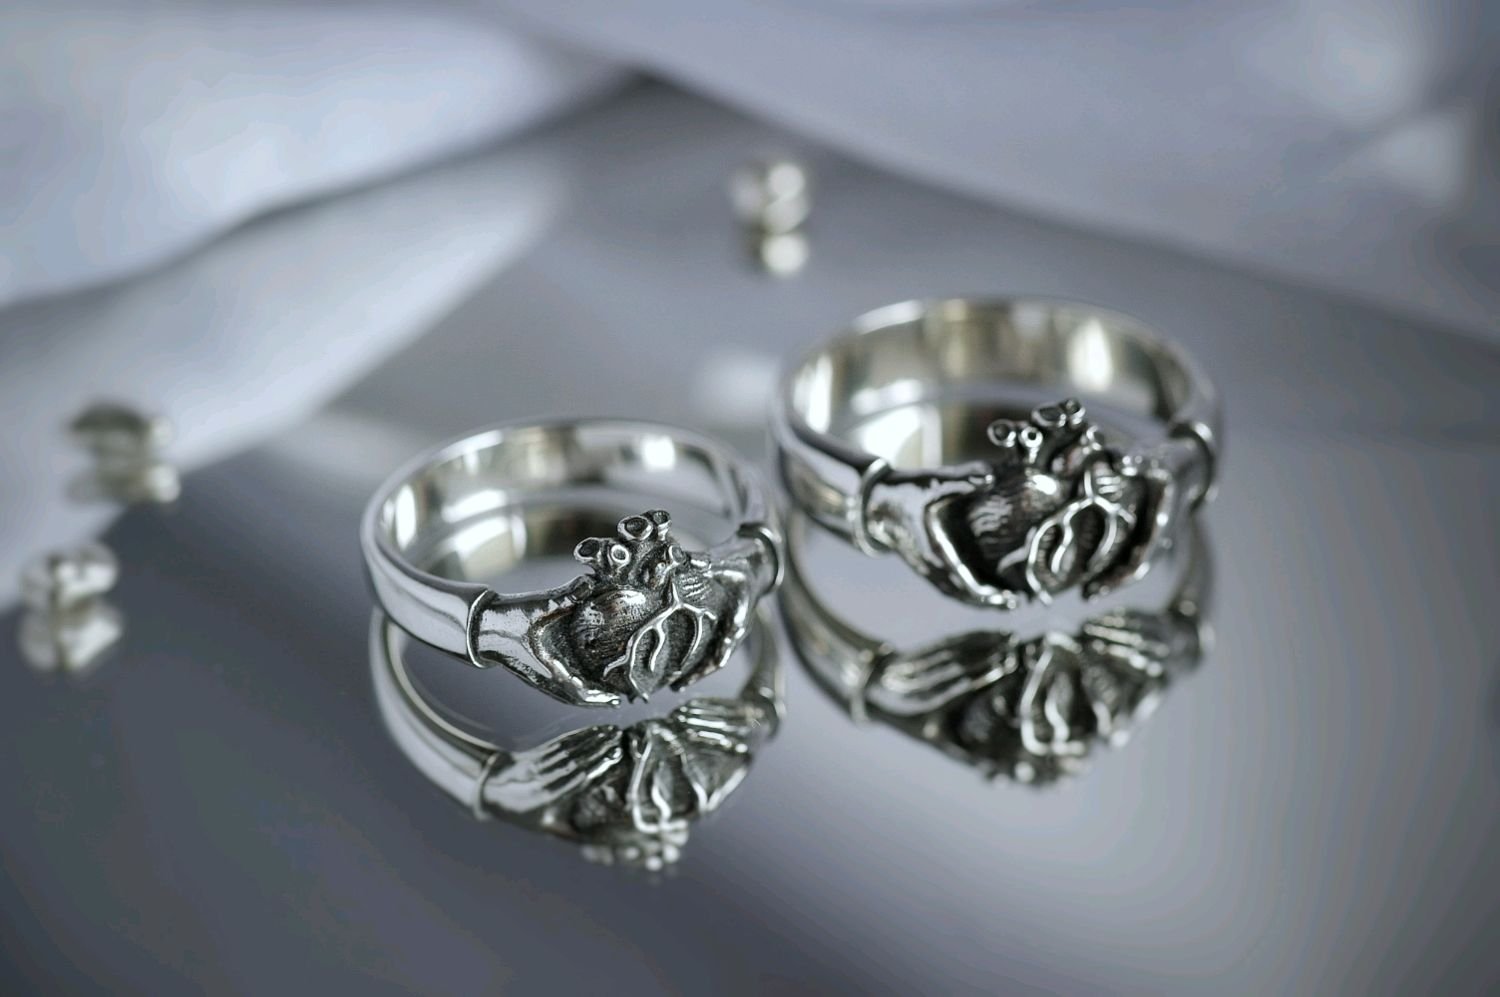 Можно обручальное кольцо серебряное. Парные кольца SEREBRO 925. SEREBRO 925 Kolca обручальные. Обручальное кольцо черненое серебро. Кольца парные обручальные в черненое серебро.